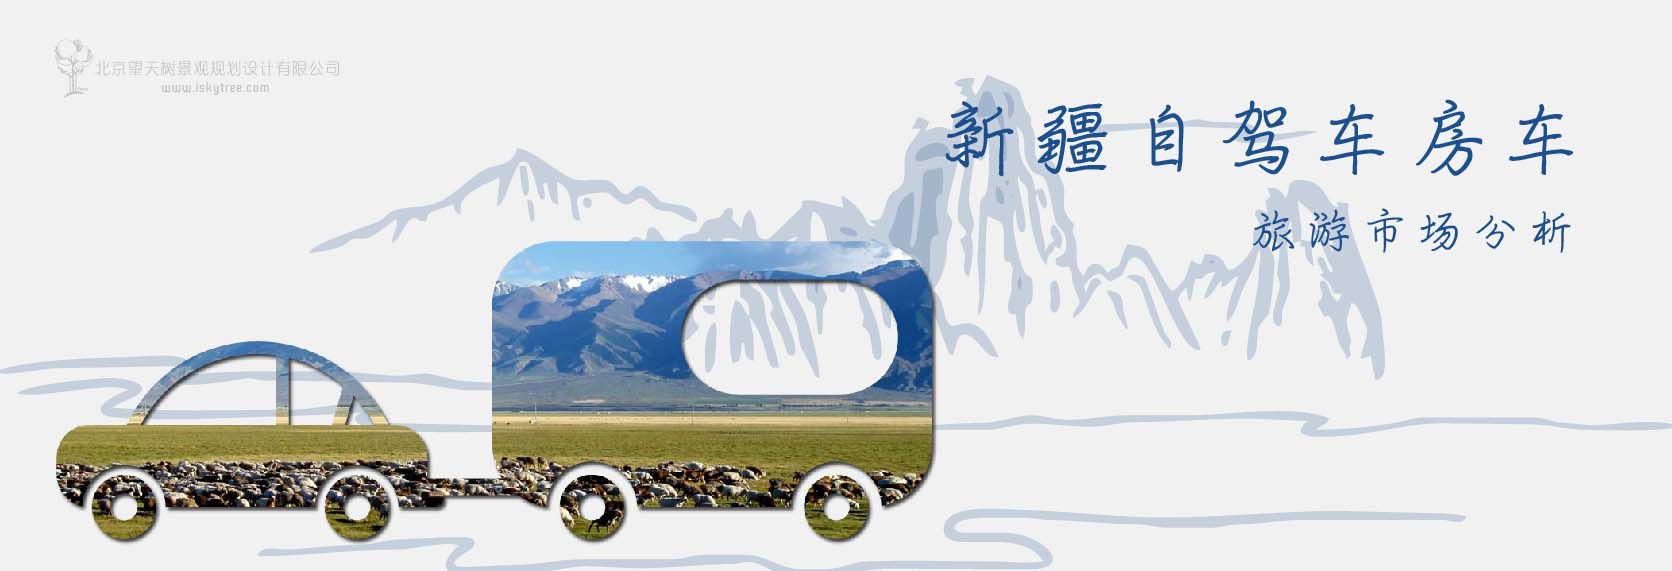 新疆自驾车房车旅游市场分析